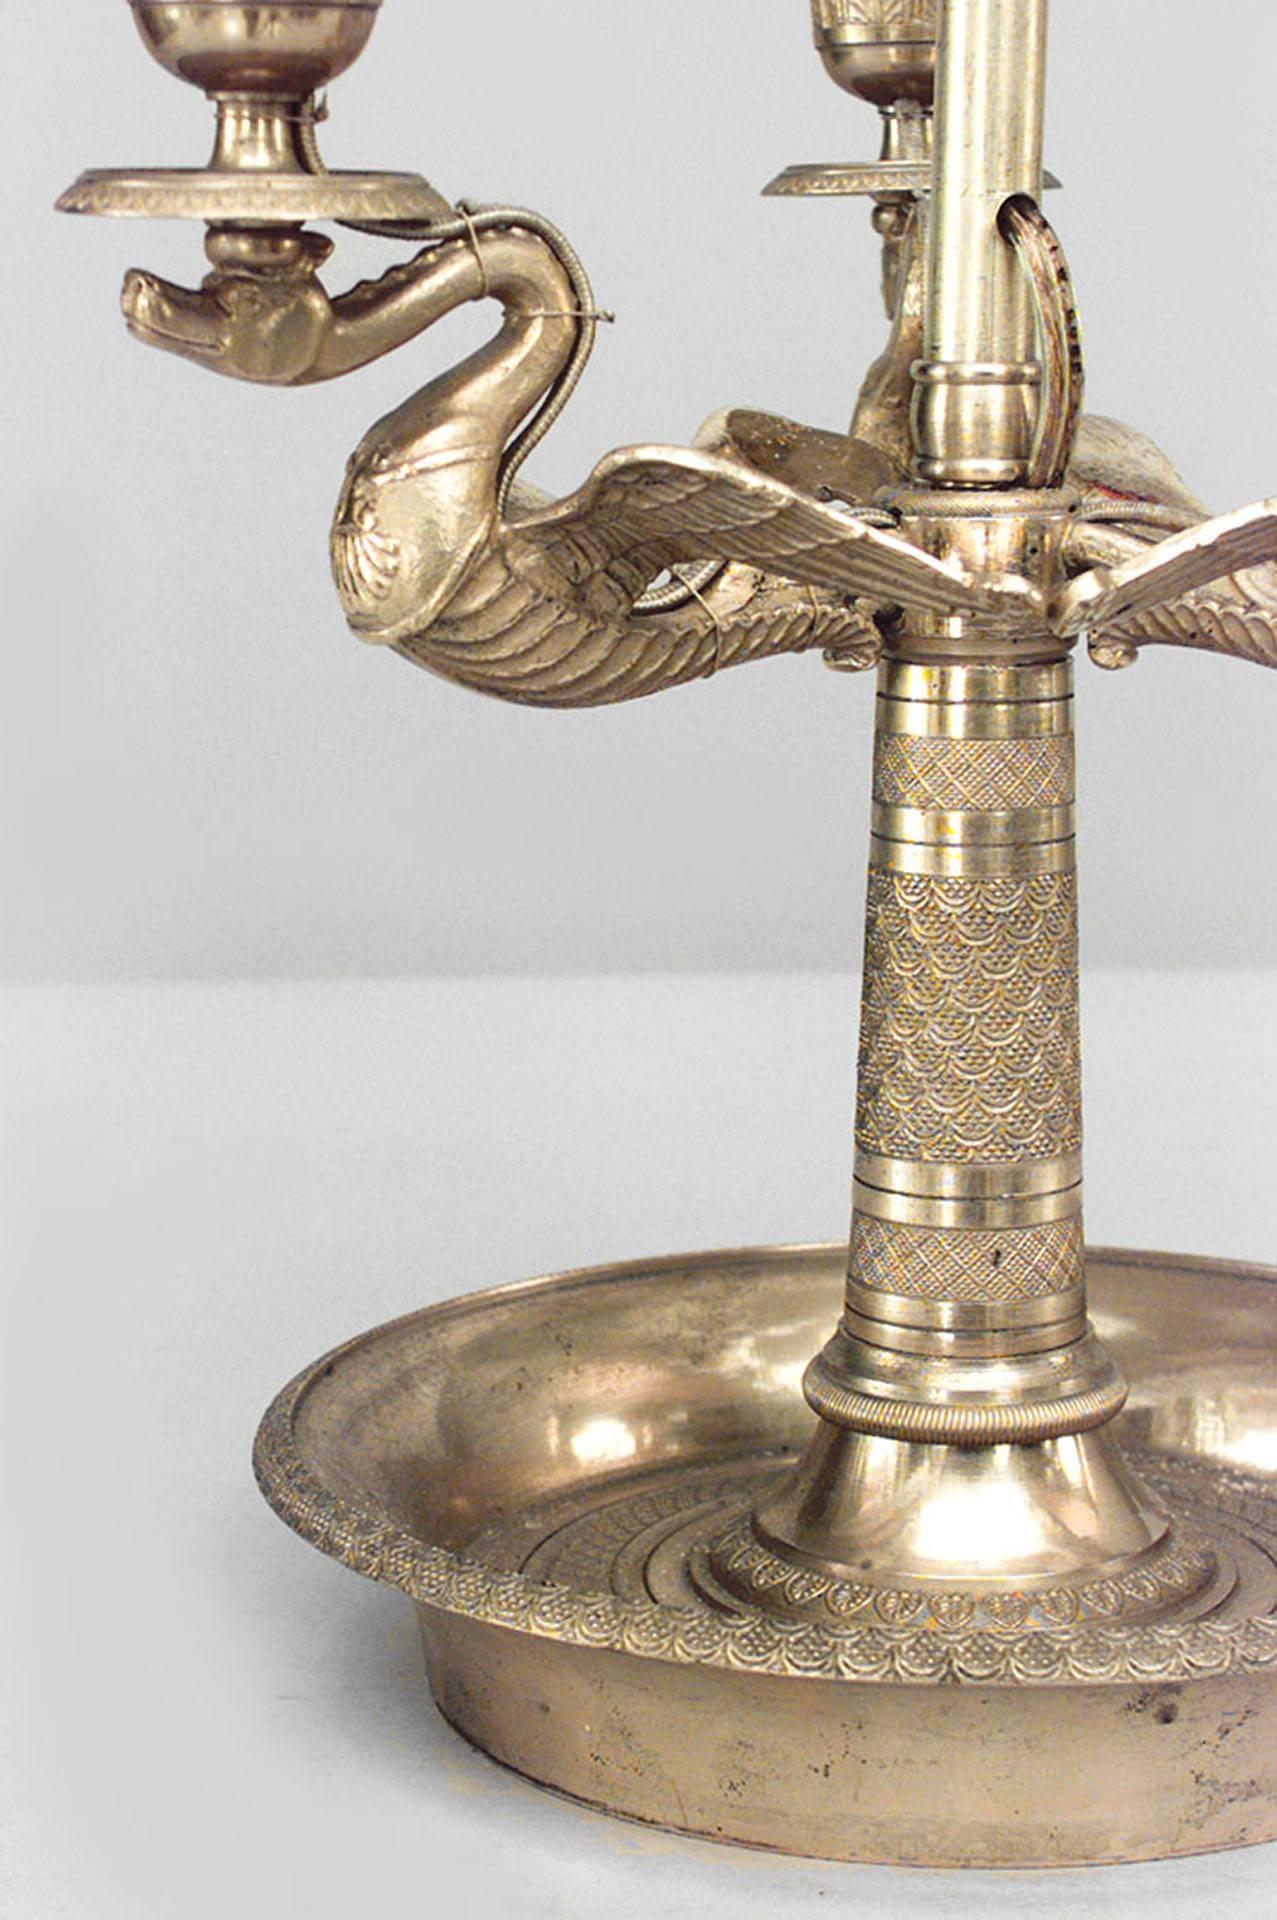 Lampe de table bouillotte à 3 bras de style Empire français (20e siècle) en bronze doré avec motif de cygne.
